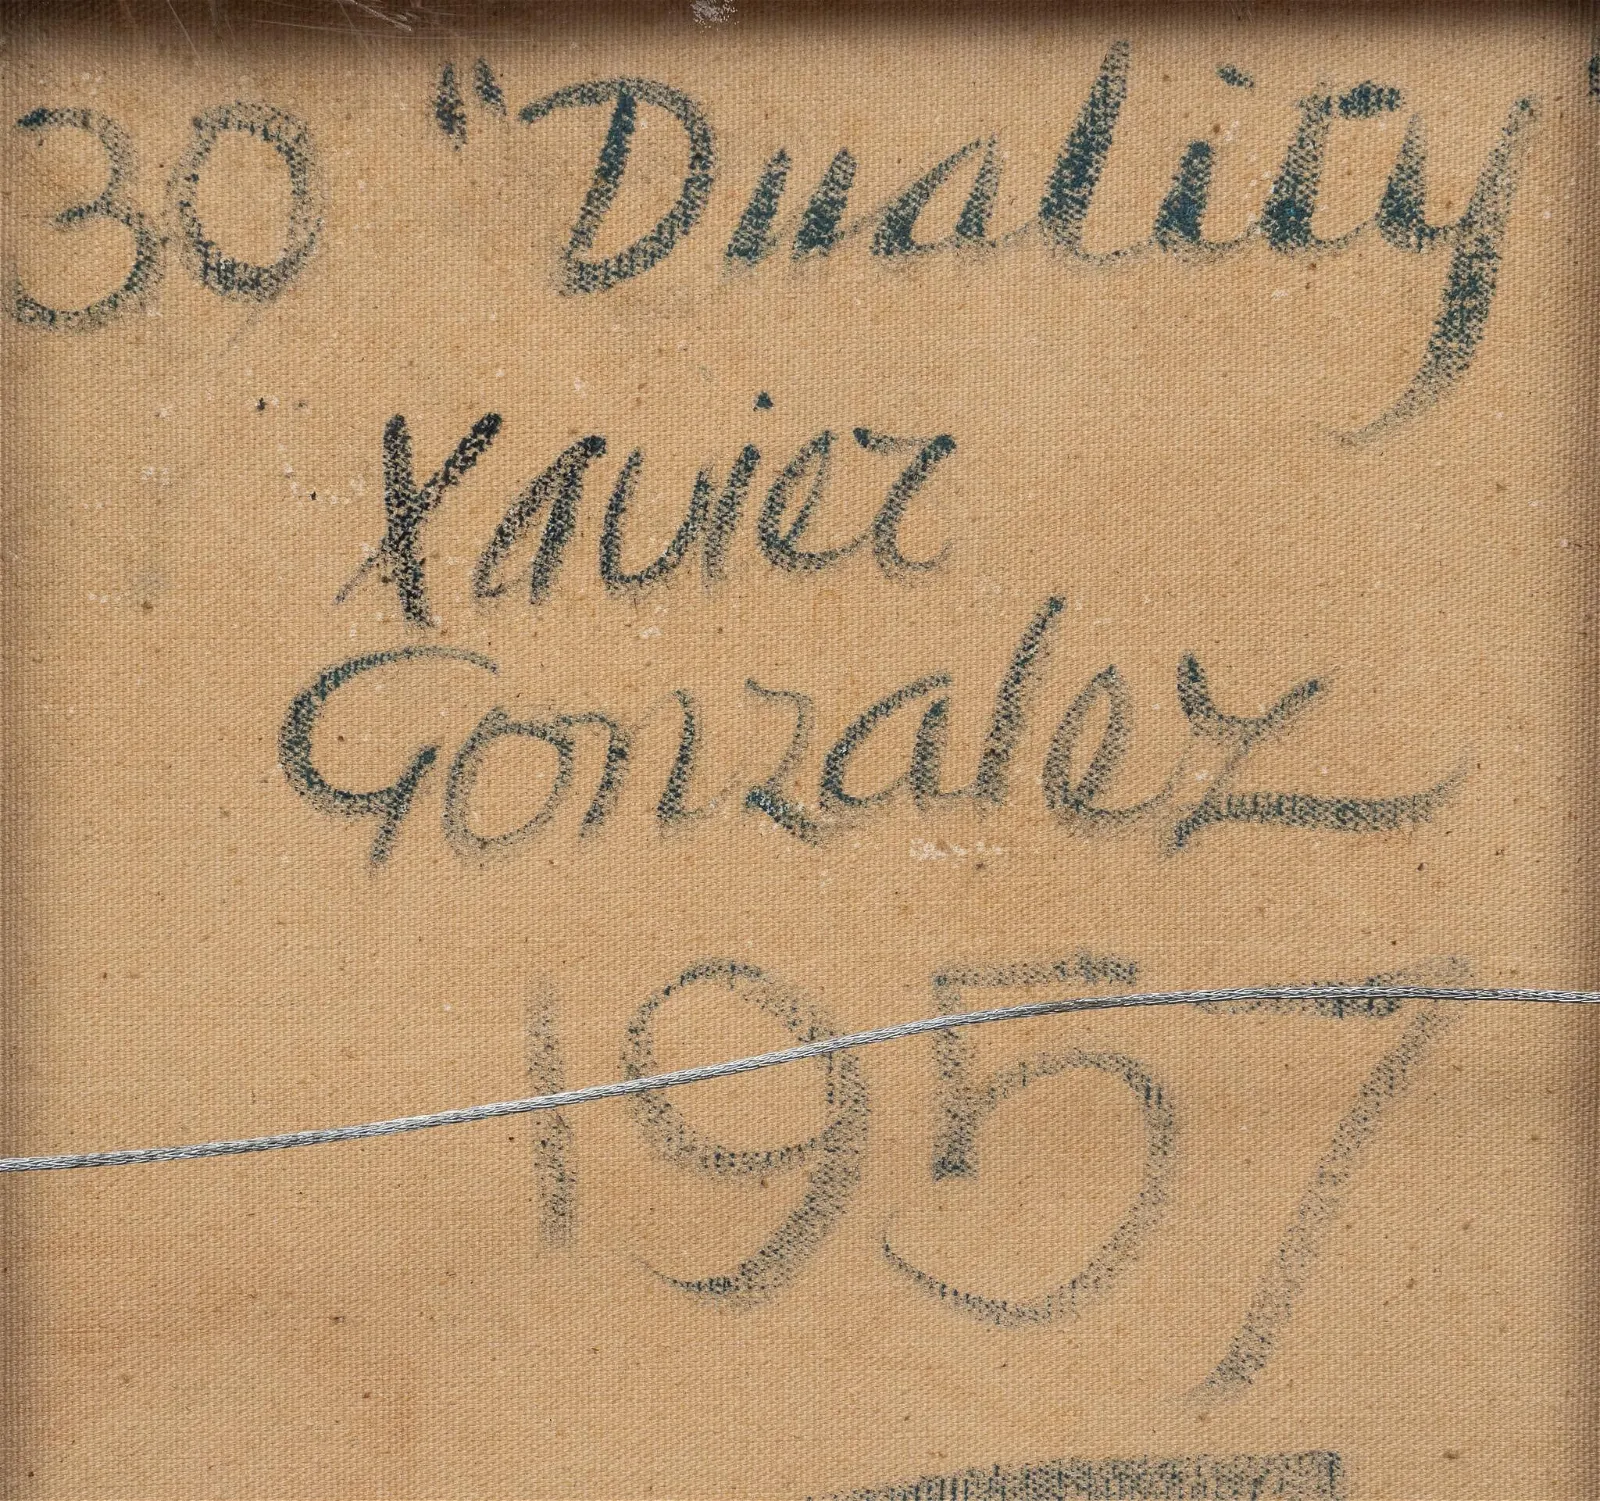 Xavier Gonzalez, "Duality", 1957